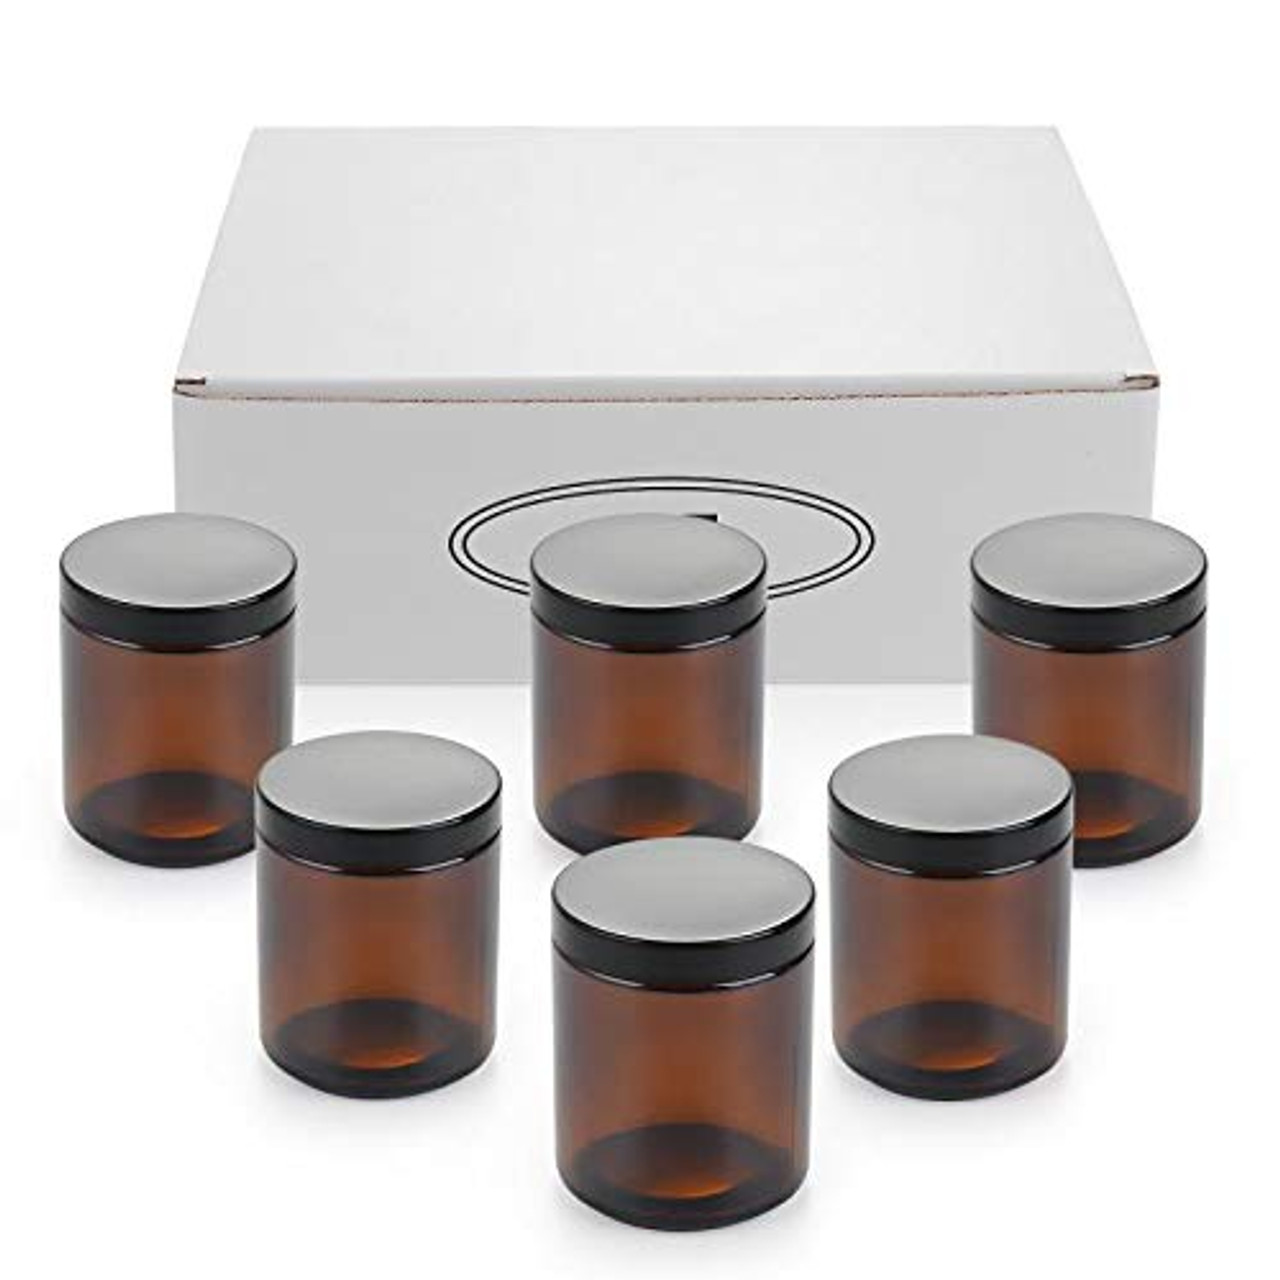 118ml Amber Jar With Black Lid, Wholesale Packaging